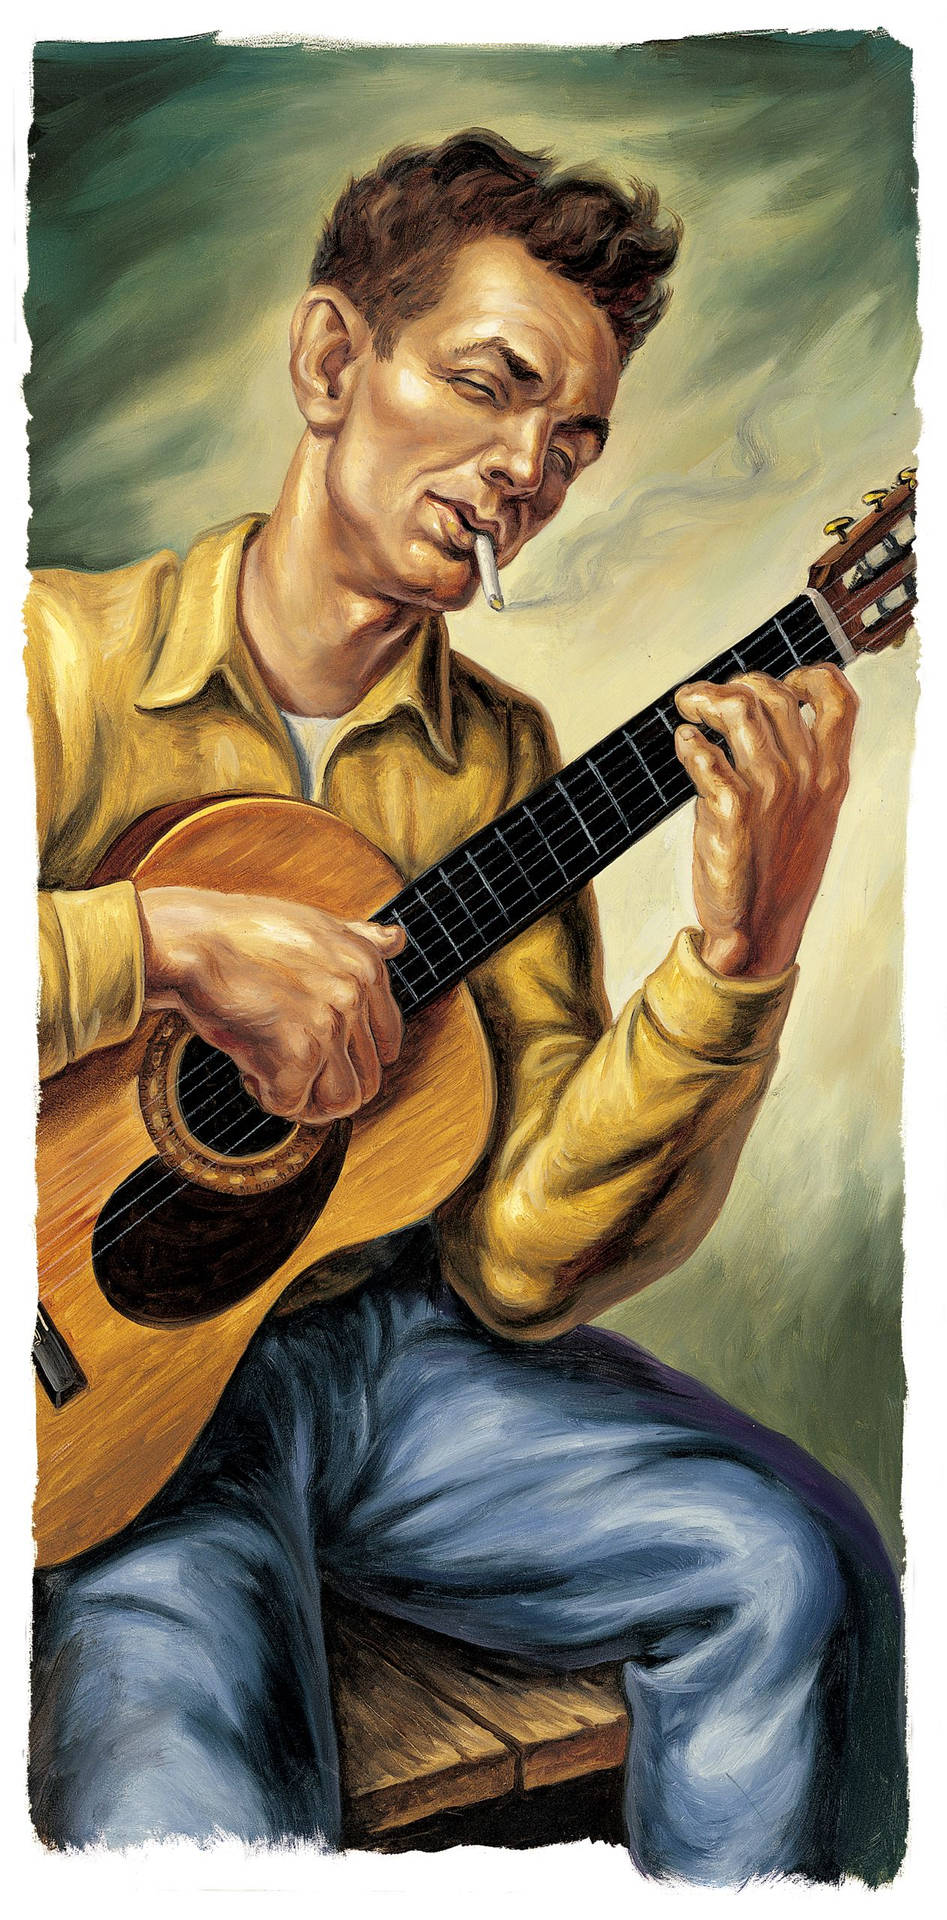 Woodyguthrie-målning - Woody Guthrie Paintings. Wallpaper